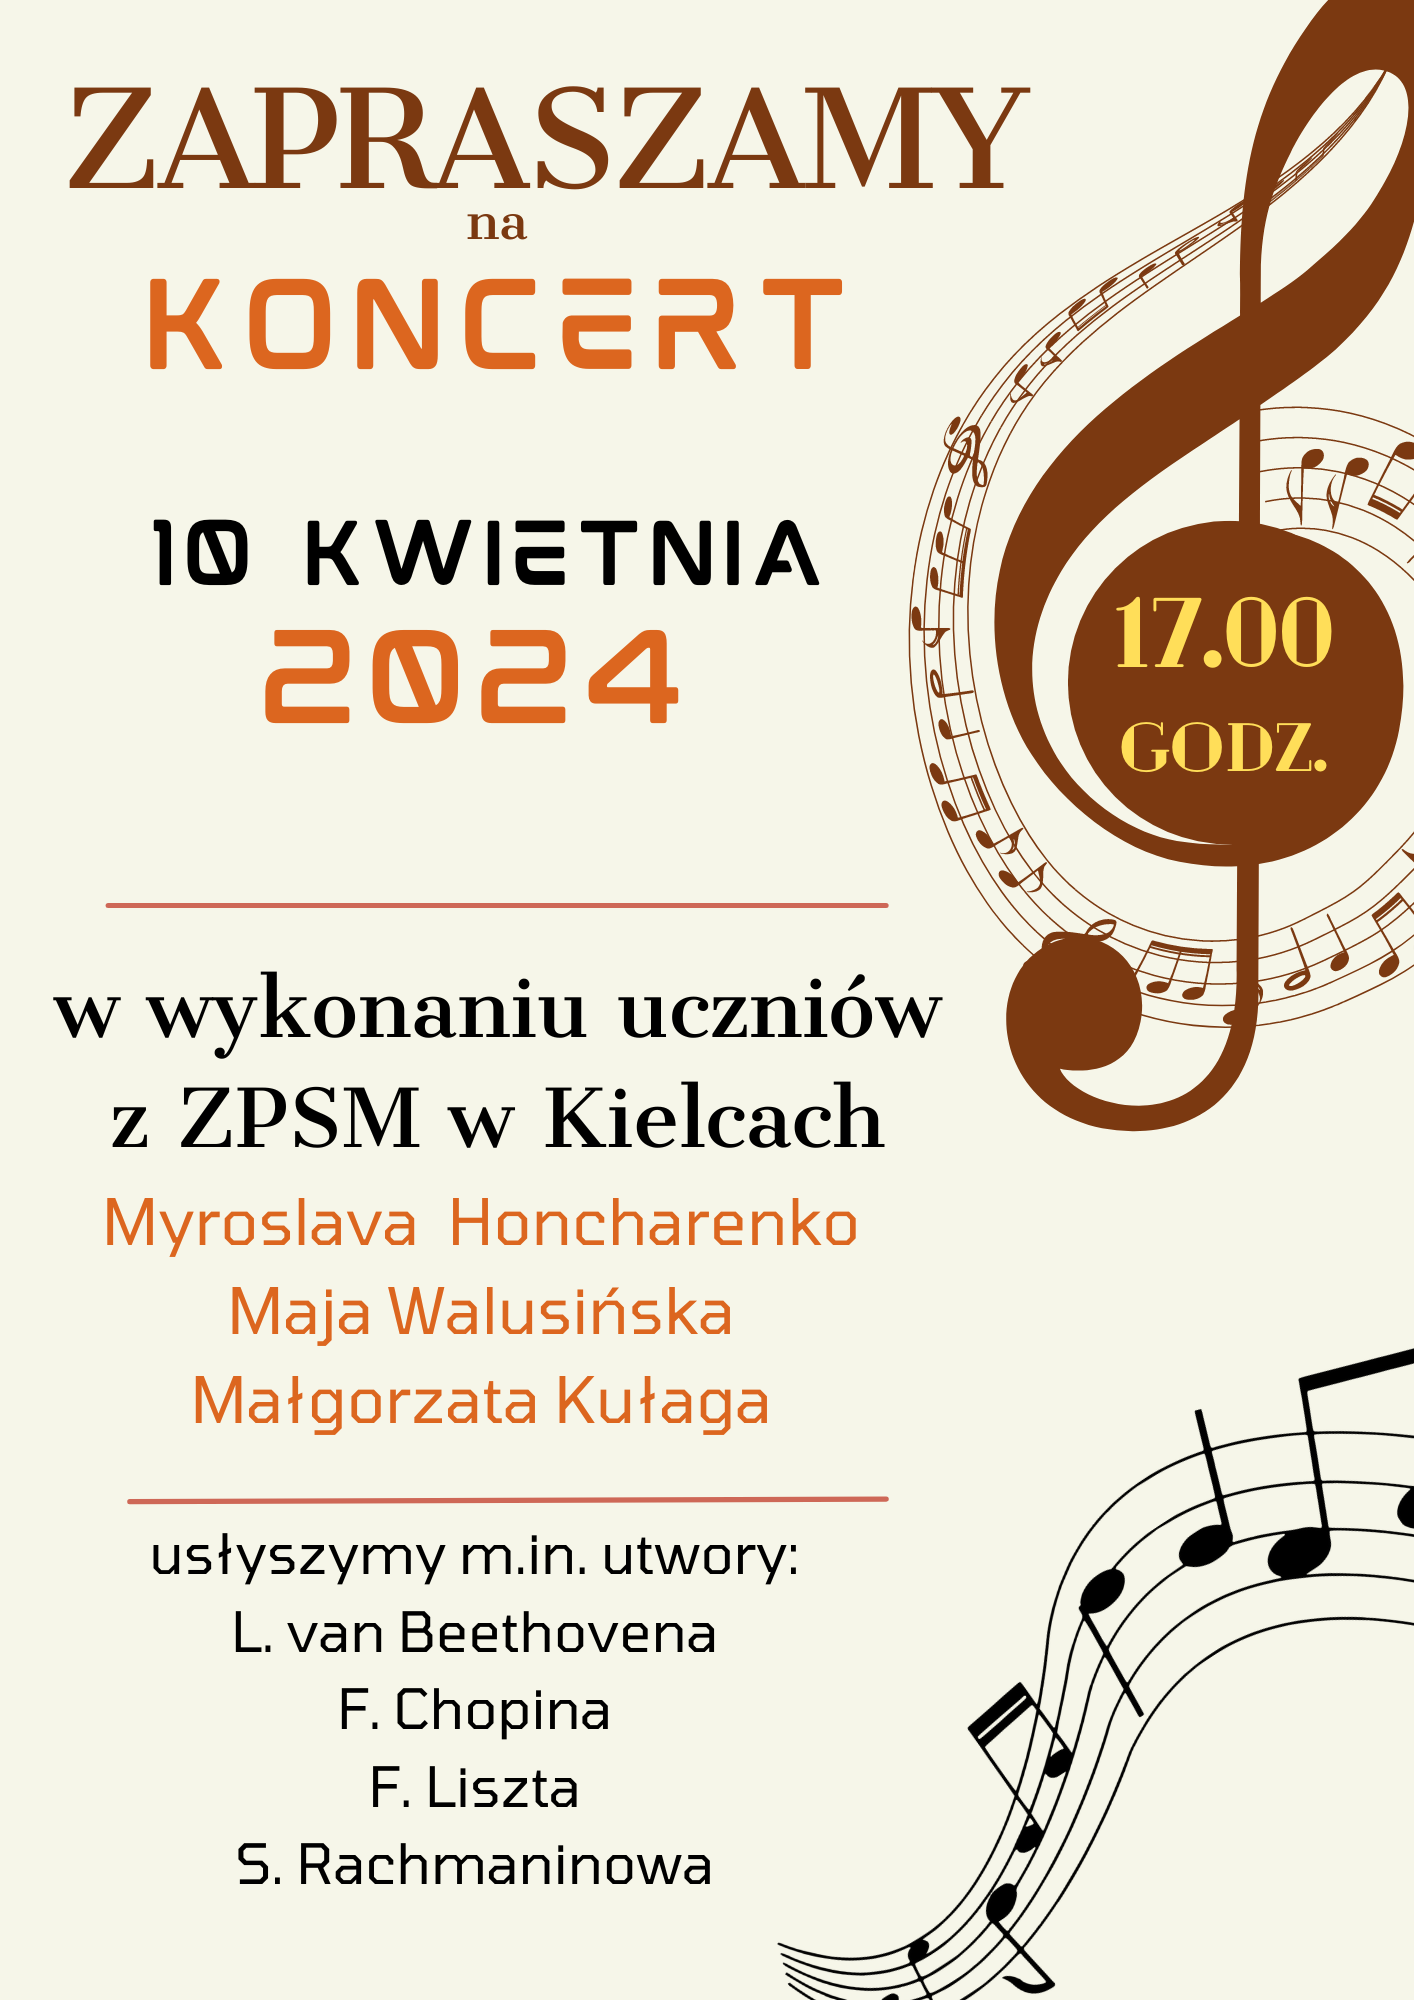 Plakat- Zapraszamy na Koncert 10 Kwietnia 2024 godz. 17.00 w wykonaniu uczniów z ZPSM w Kielcach Myroslava Honcharenko, Maja Wlusińska, Małgorzata Kułaga. Usłyszymy m.in. utwory L. van Beethoven, F. Chopina, F. Liszta, S.Rachmaninowa